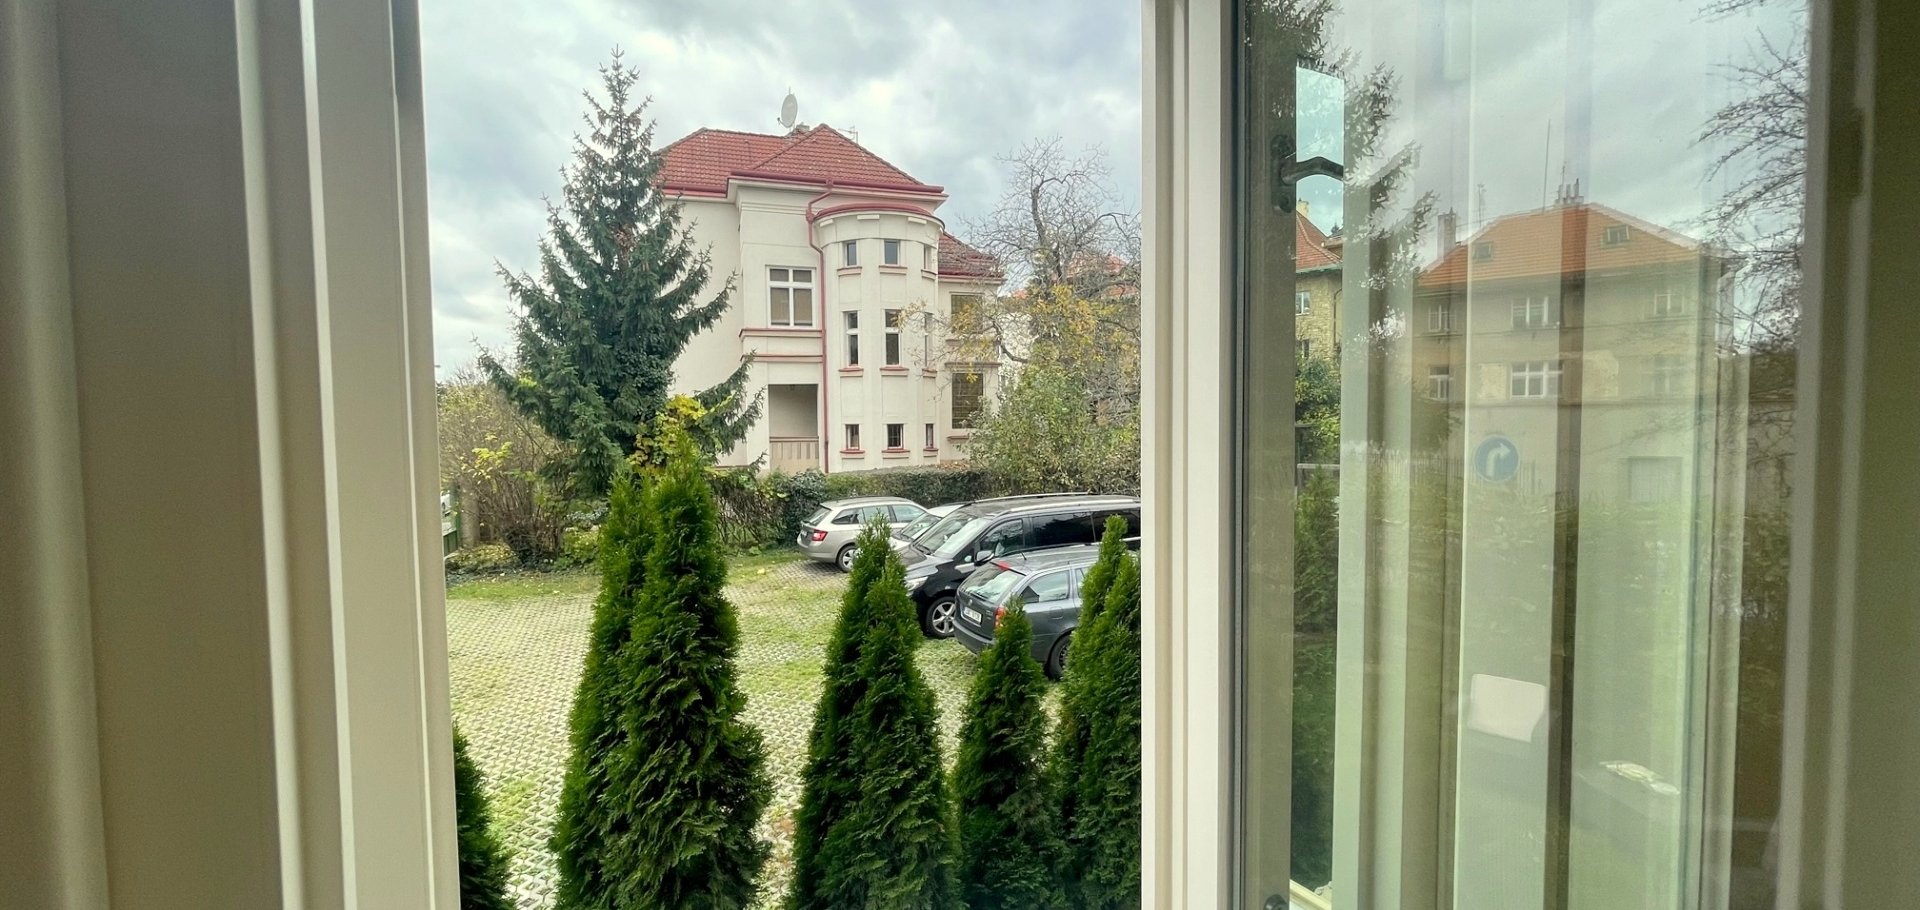 Byt 2+1 s balkonem a sklepem ve vilové zástavbě, Praha 8 - Libeň